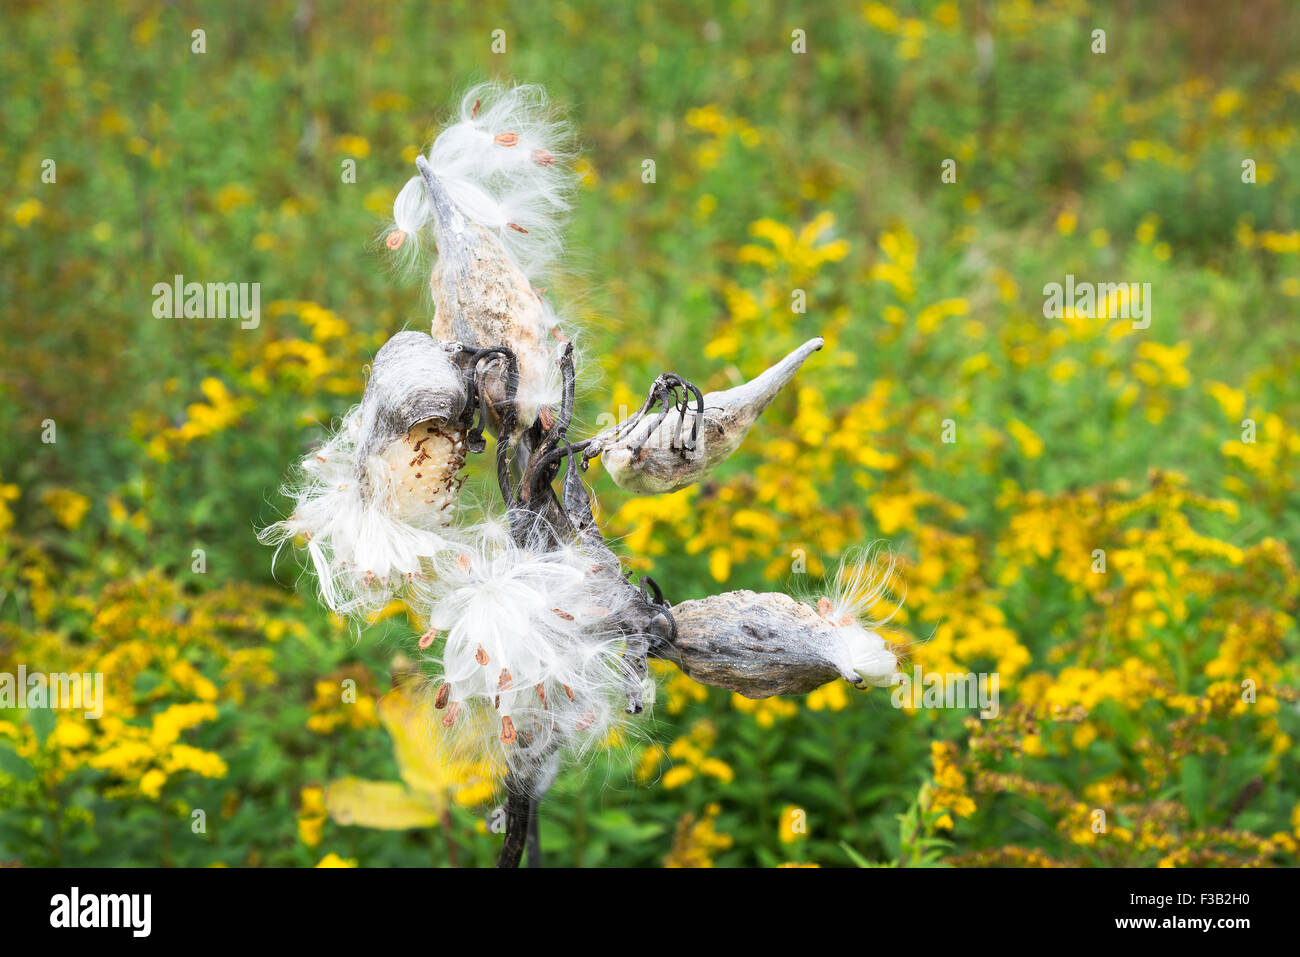 Les gousses d'asclépiades burst pour libérer leurs graines dans un champ vert avec des fleurs jaune or. Banque D'Images